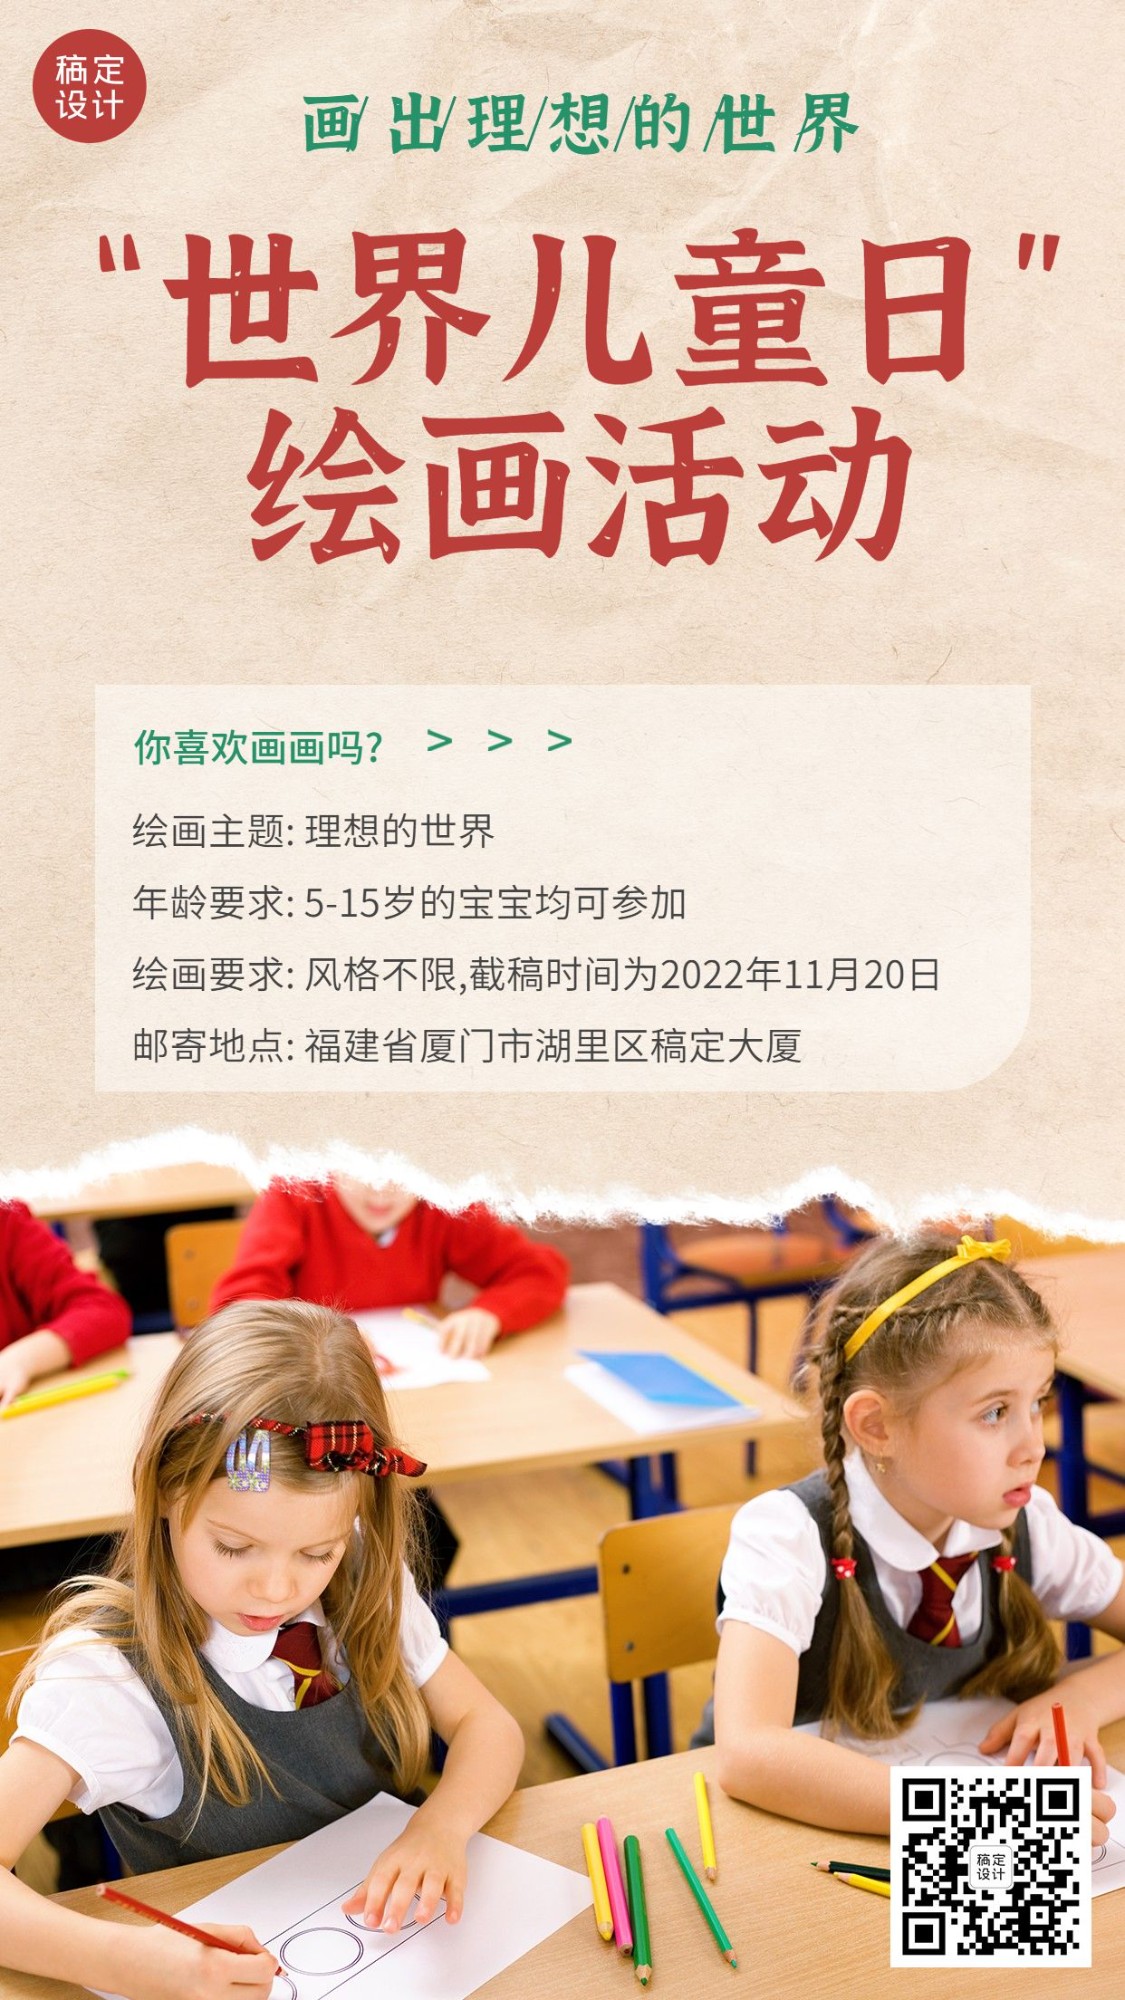 世界儿童日节日活动实景手机海报